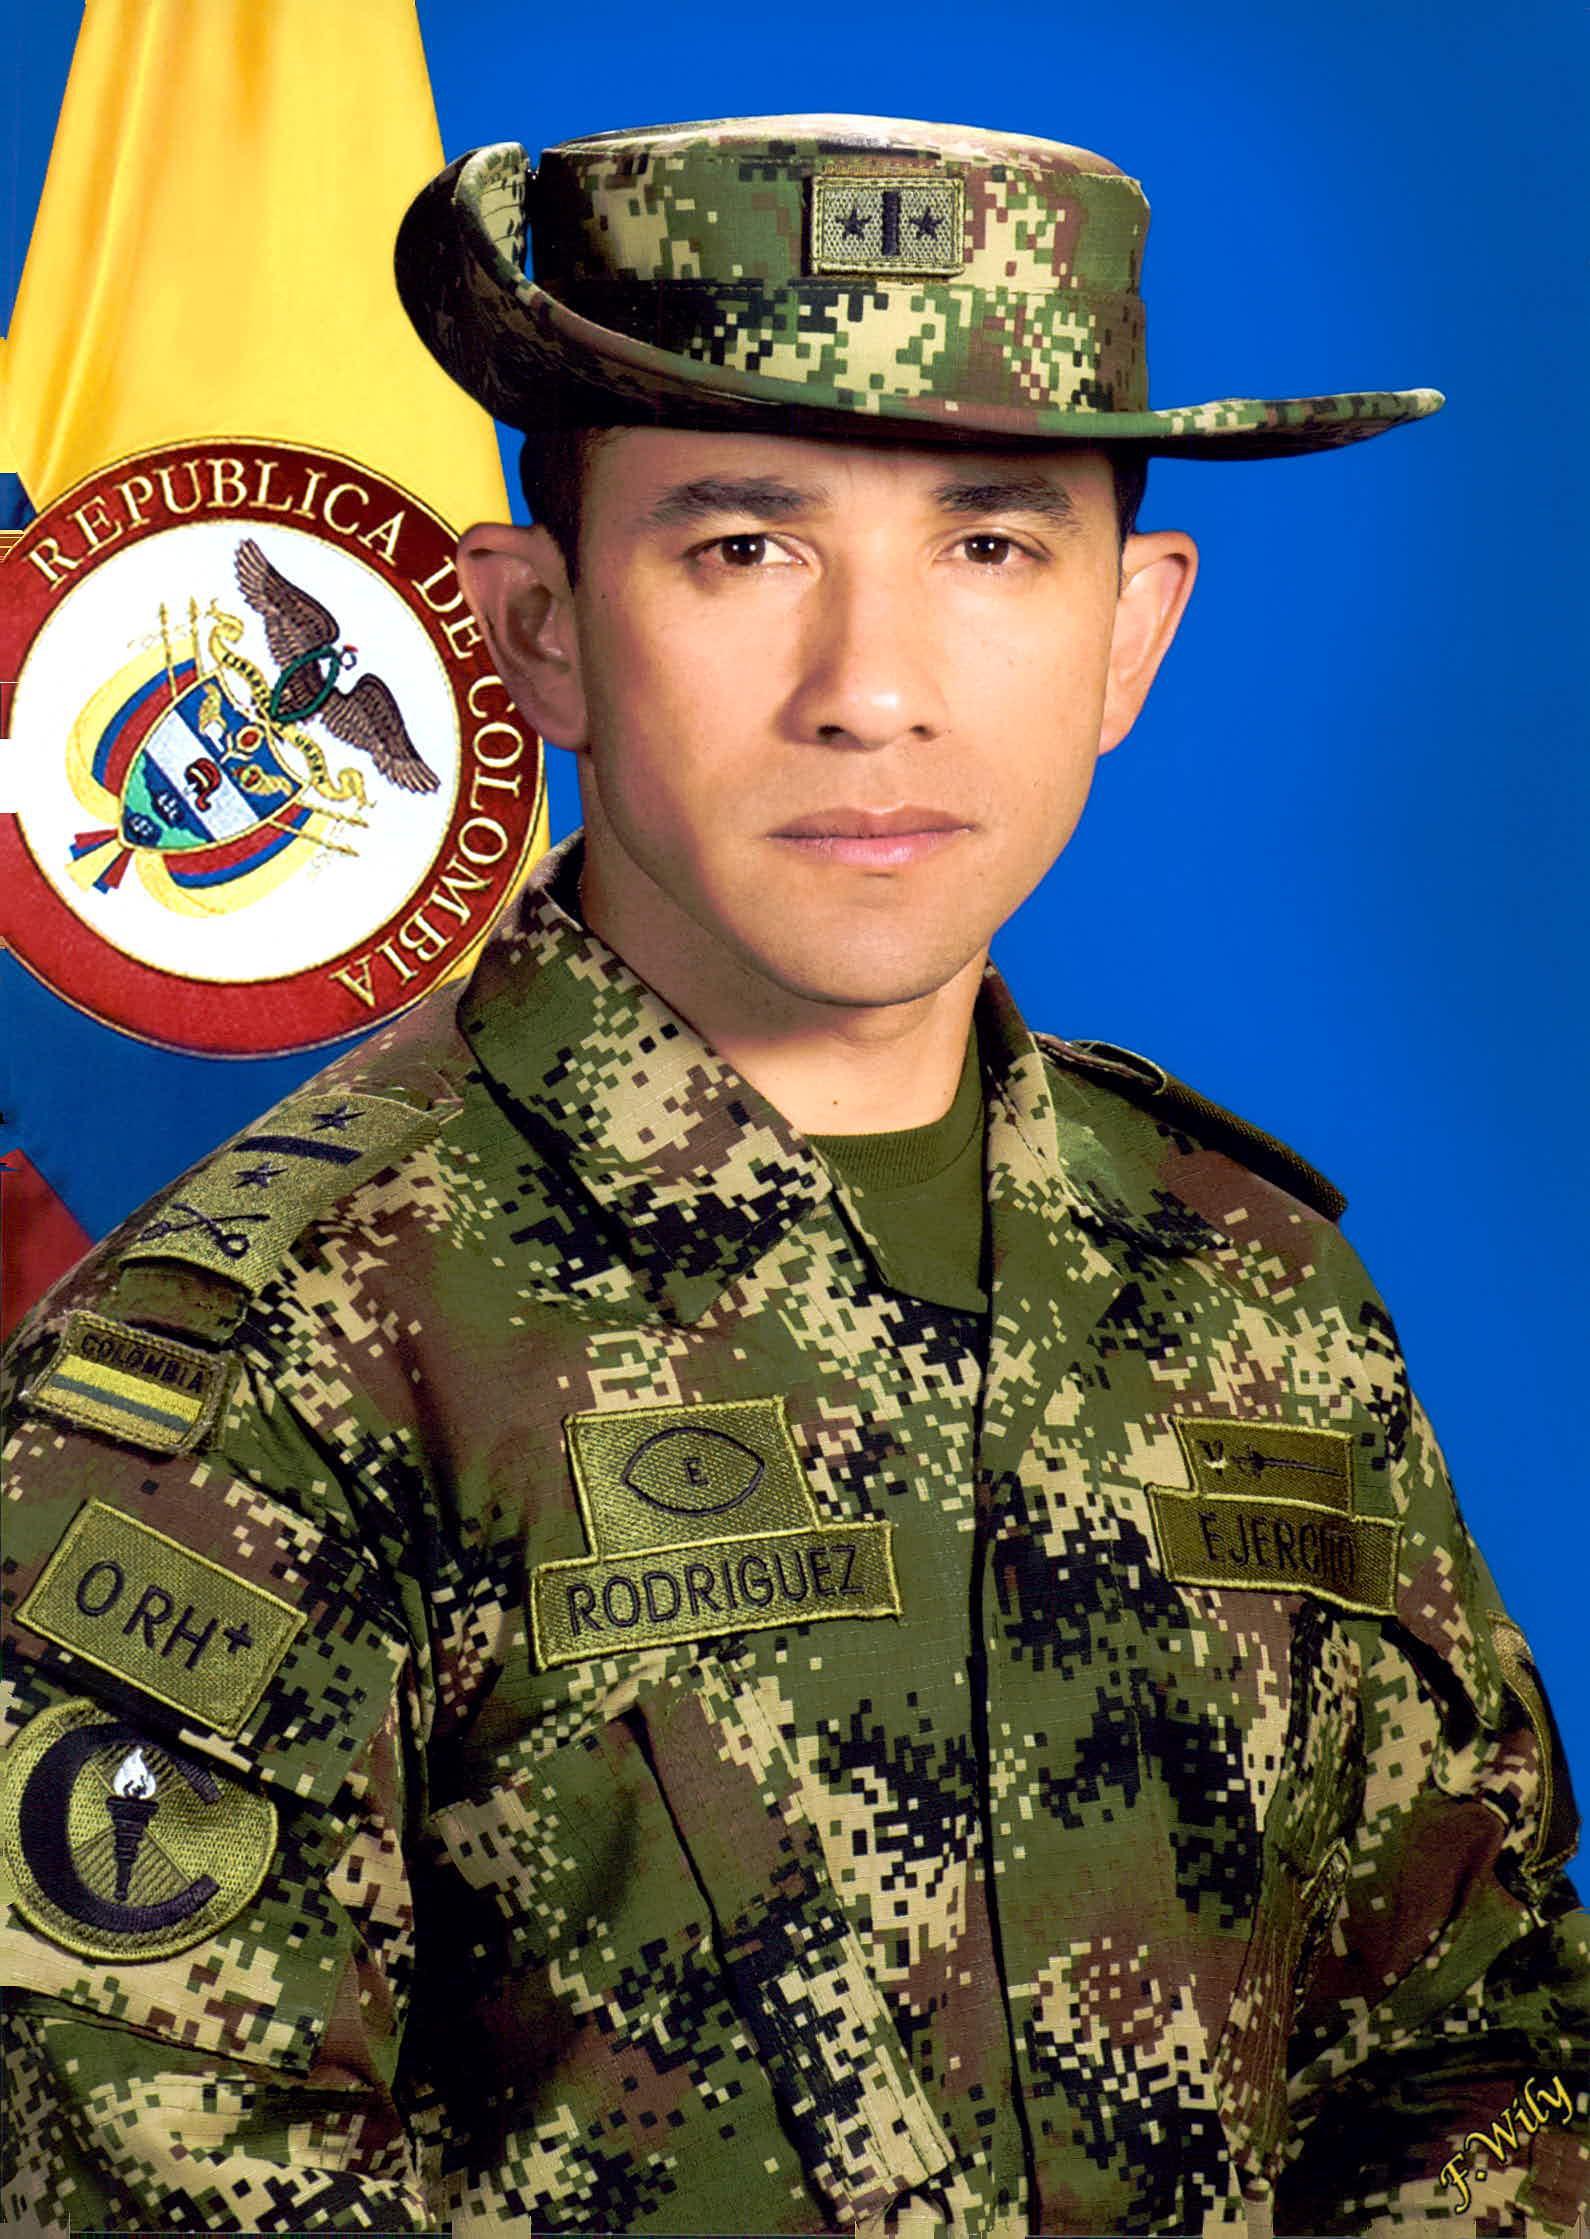 Teniente Coronel David Rodriguez